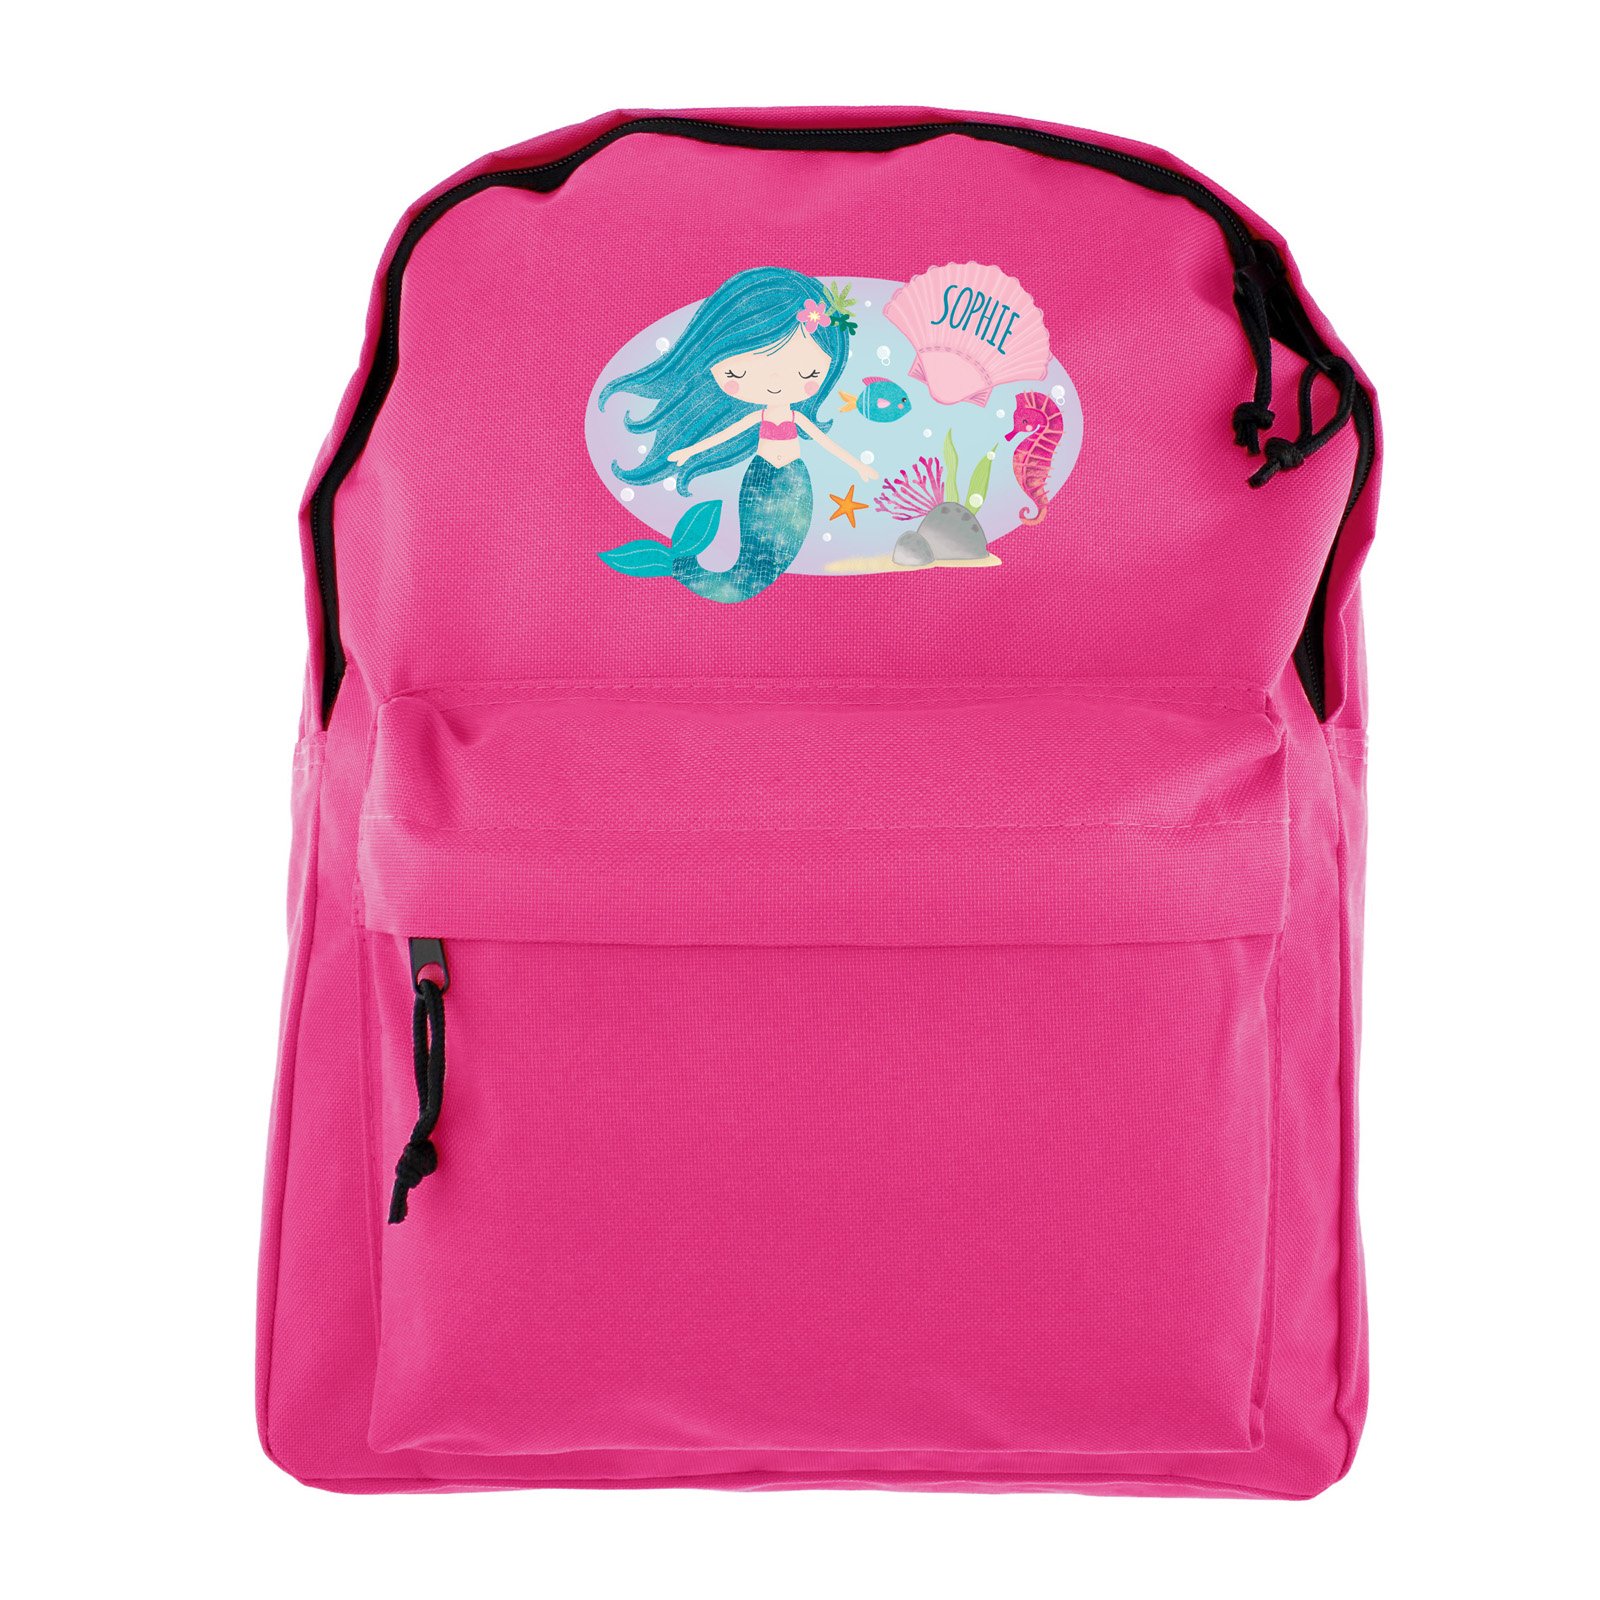 Personalised Backpack - Mermaid